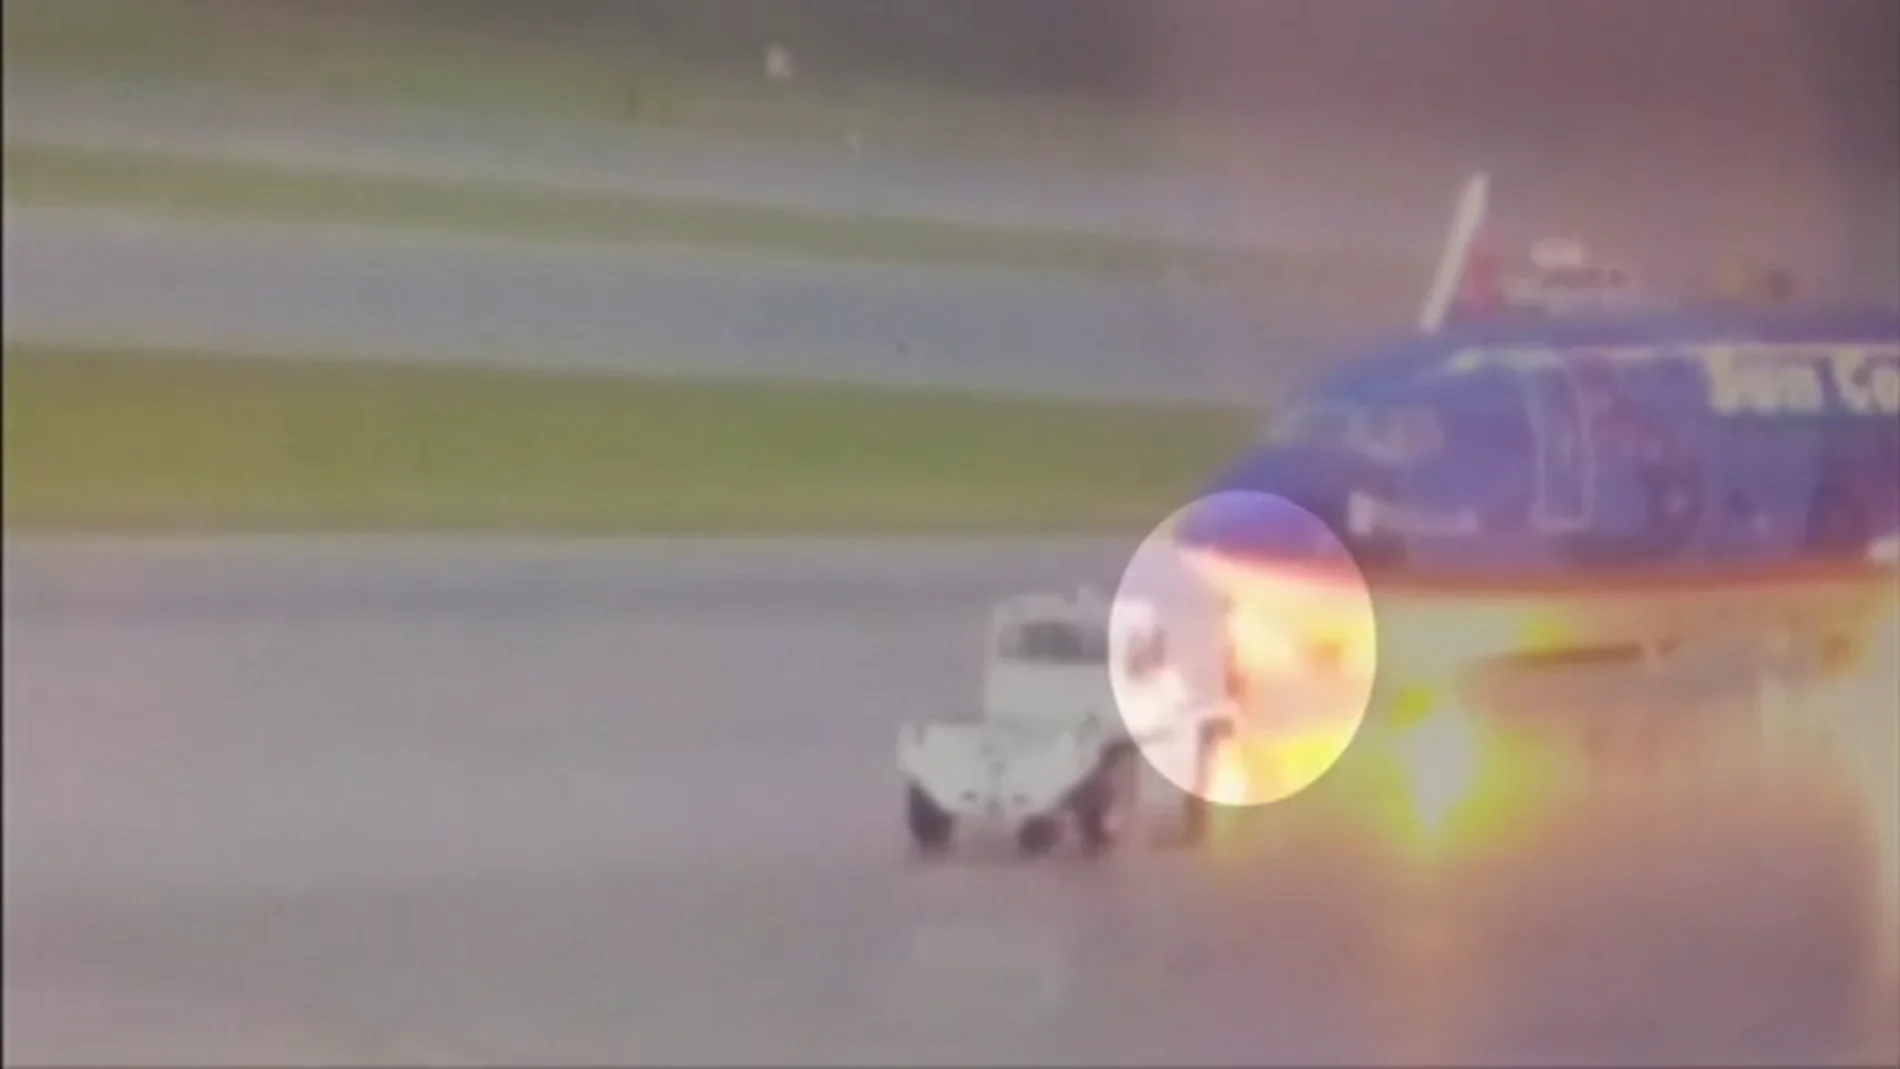 Captan el momento en el que un operario se desploma tras ser alcanzado por un rayo en el aeropuerto de Florida